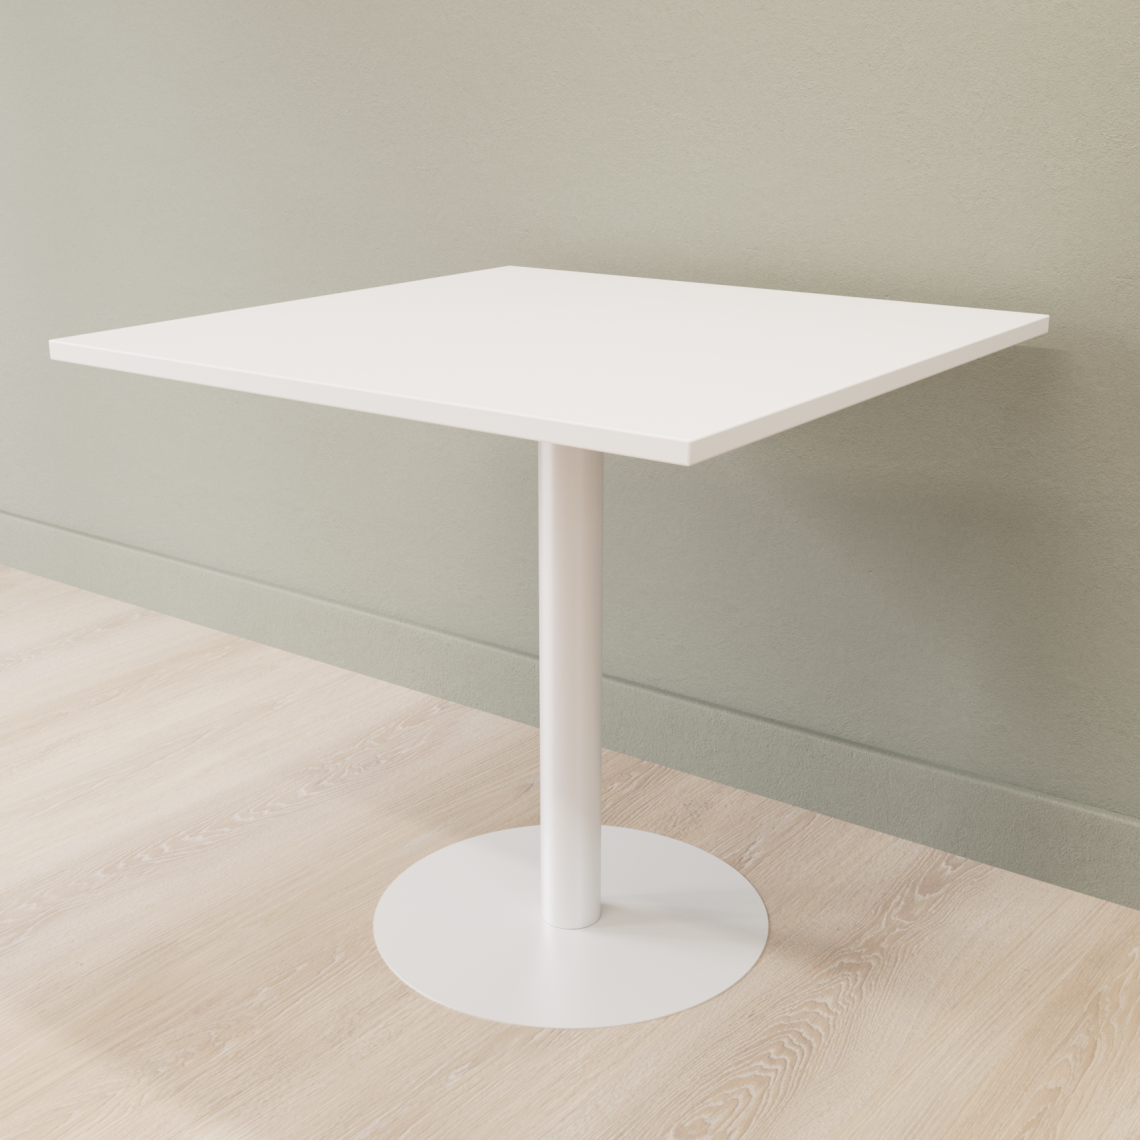 Cafebord med firkantet bordplade og rund fod, Størrelse 60 x 60 cm, Bordplade Hvid, Stativ Hvid